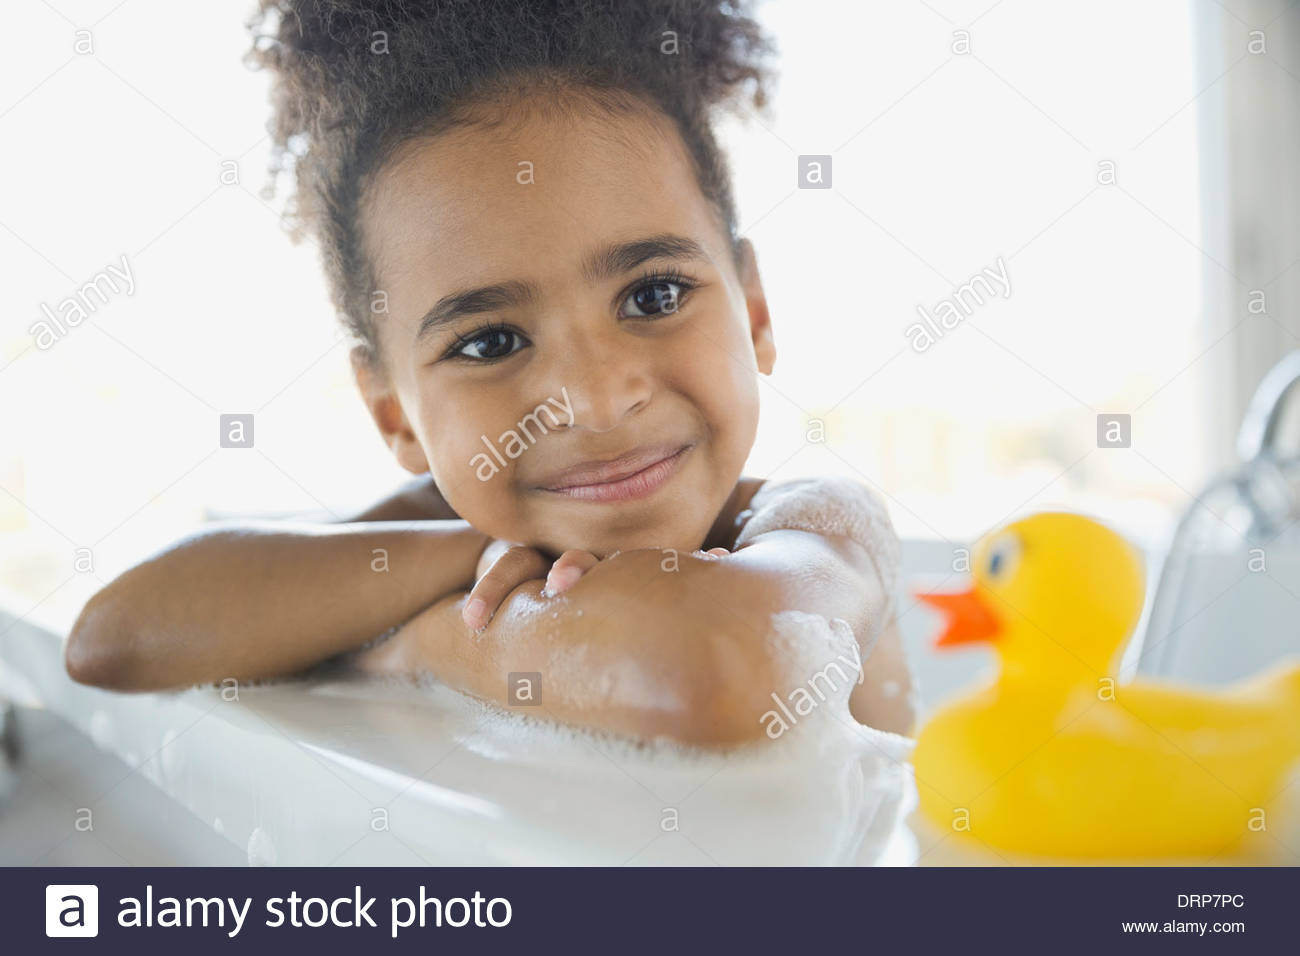 Fille dans un bain de mousse avec rubber duck Banque D'Images